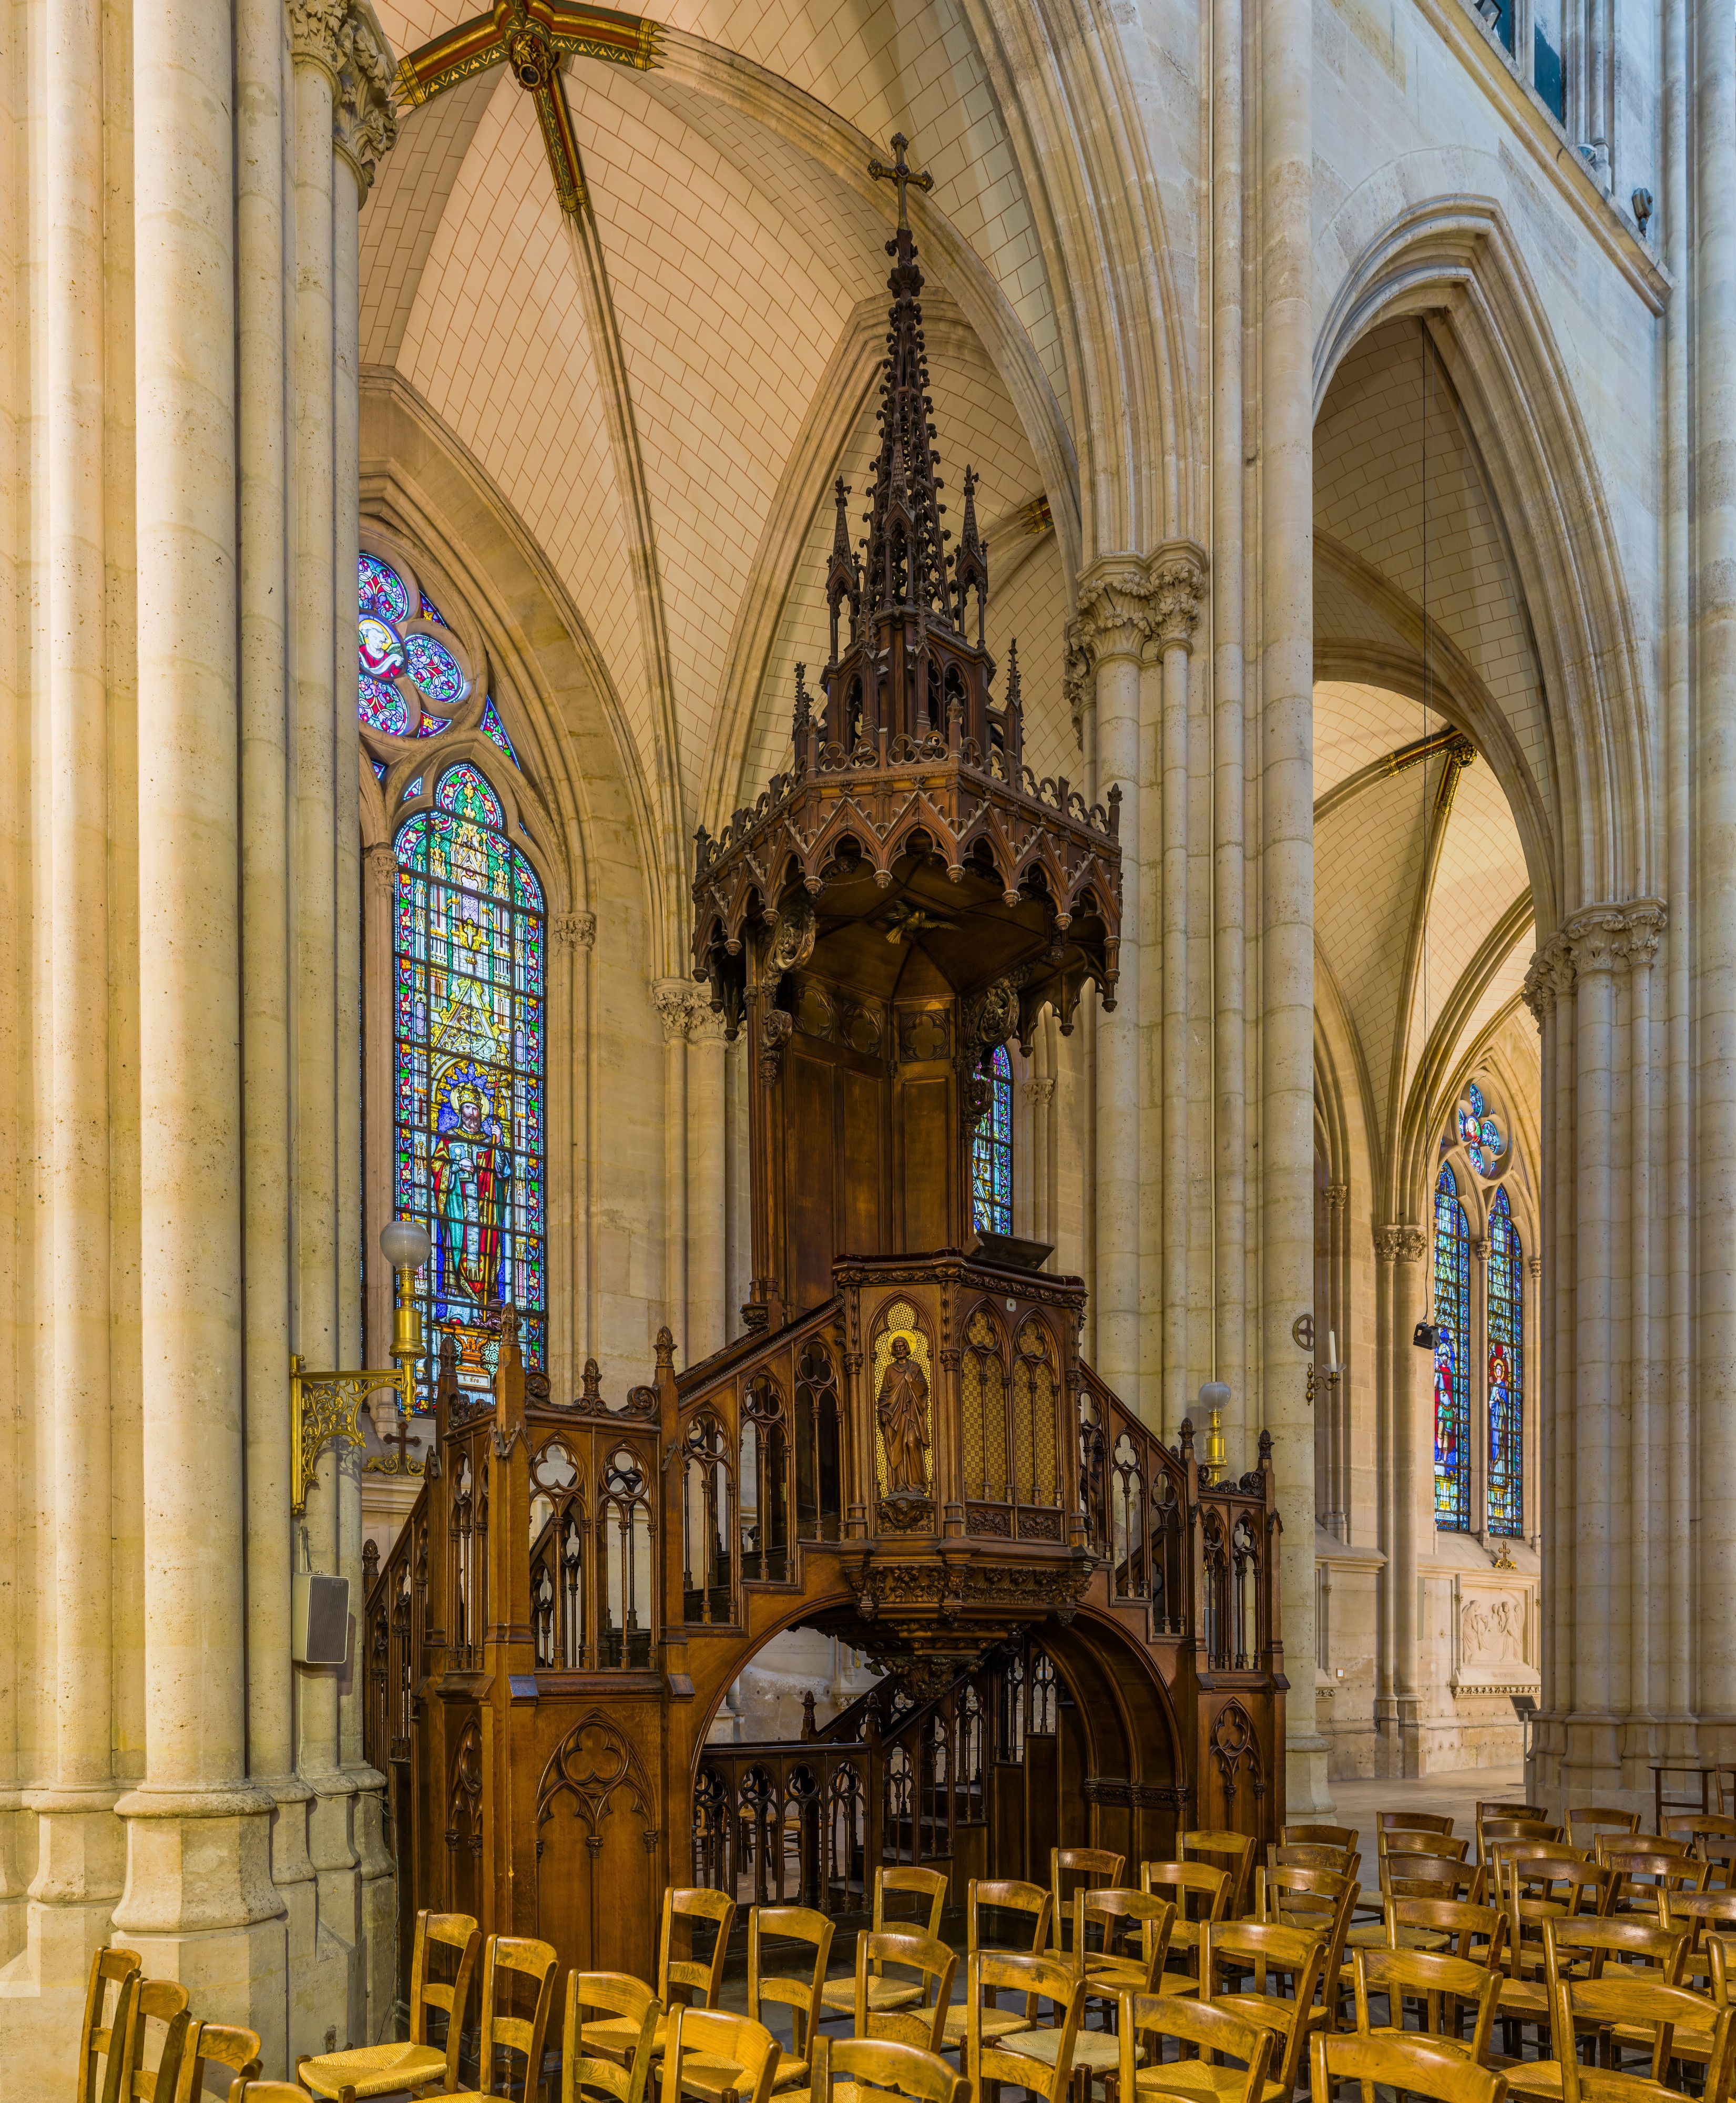 Basilica of Saint Clotilde Pulpit, Paris, France - Diliff